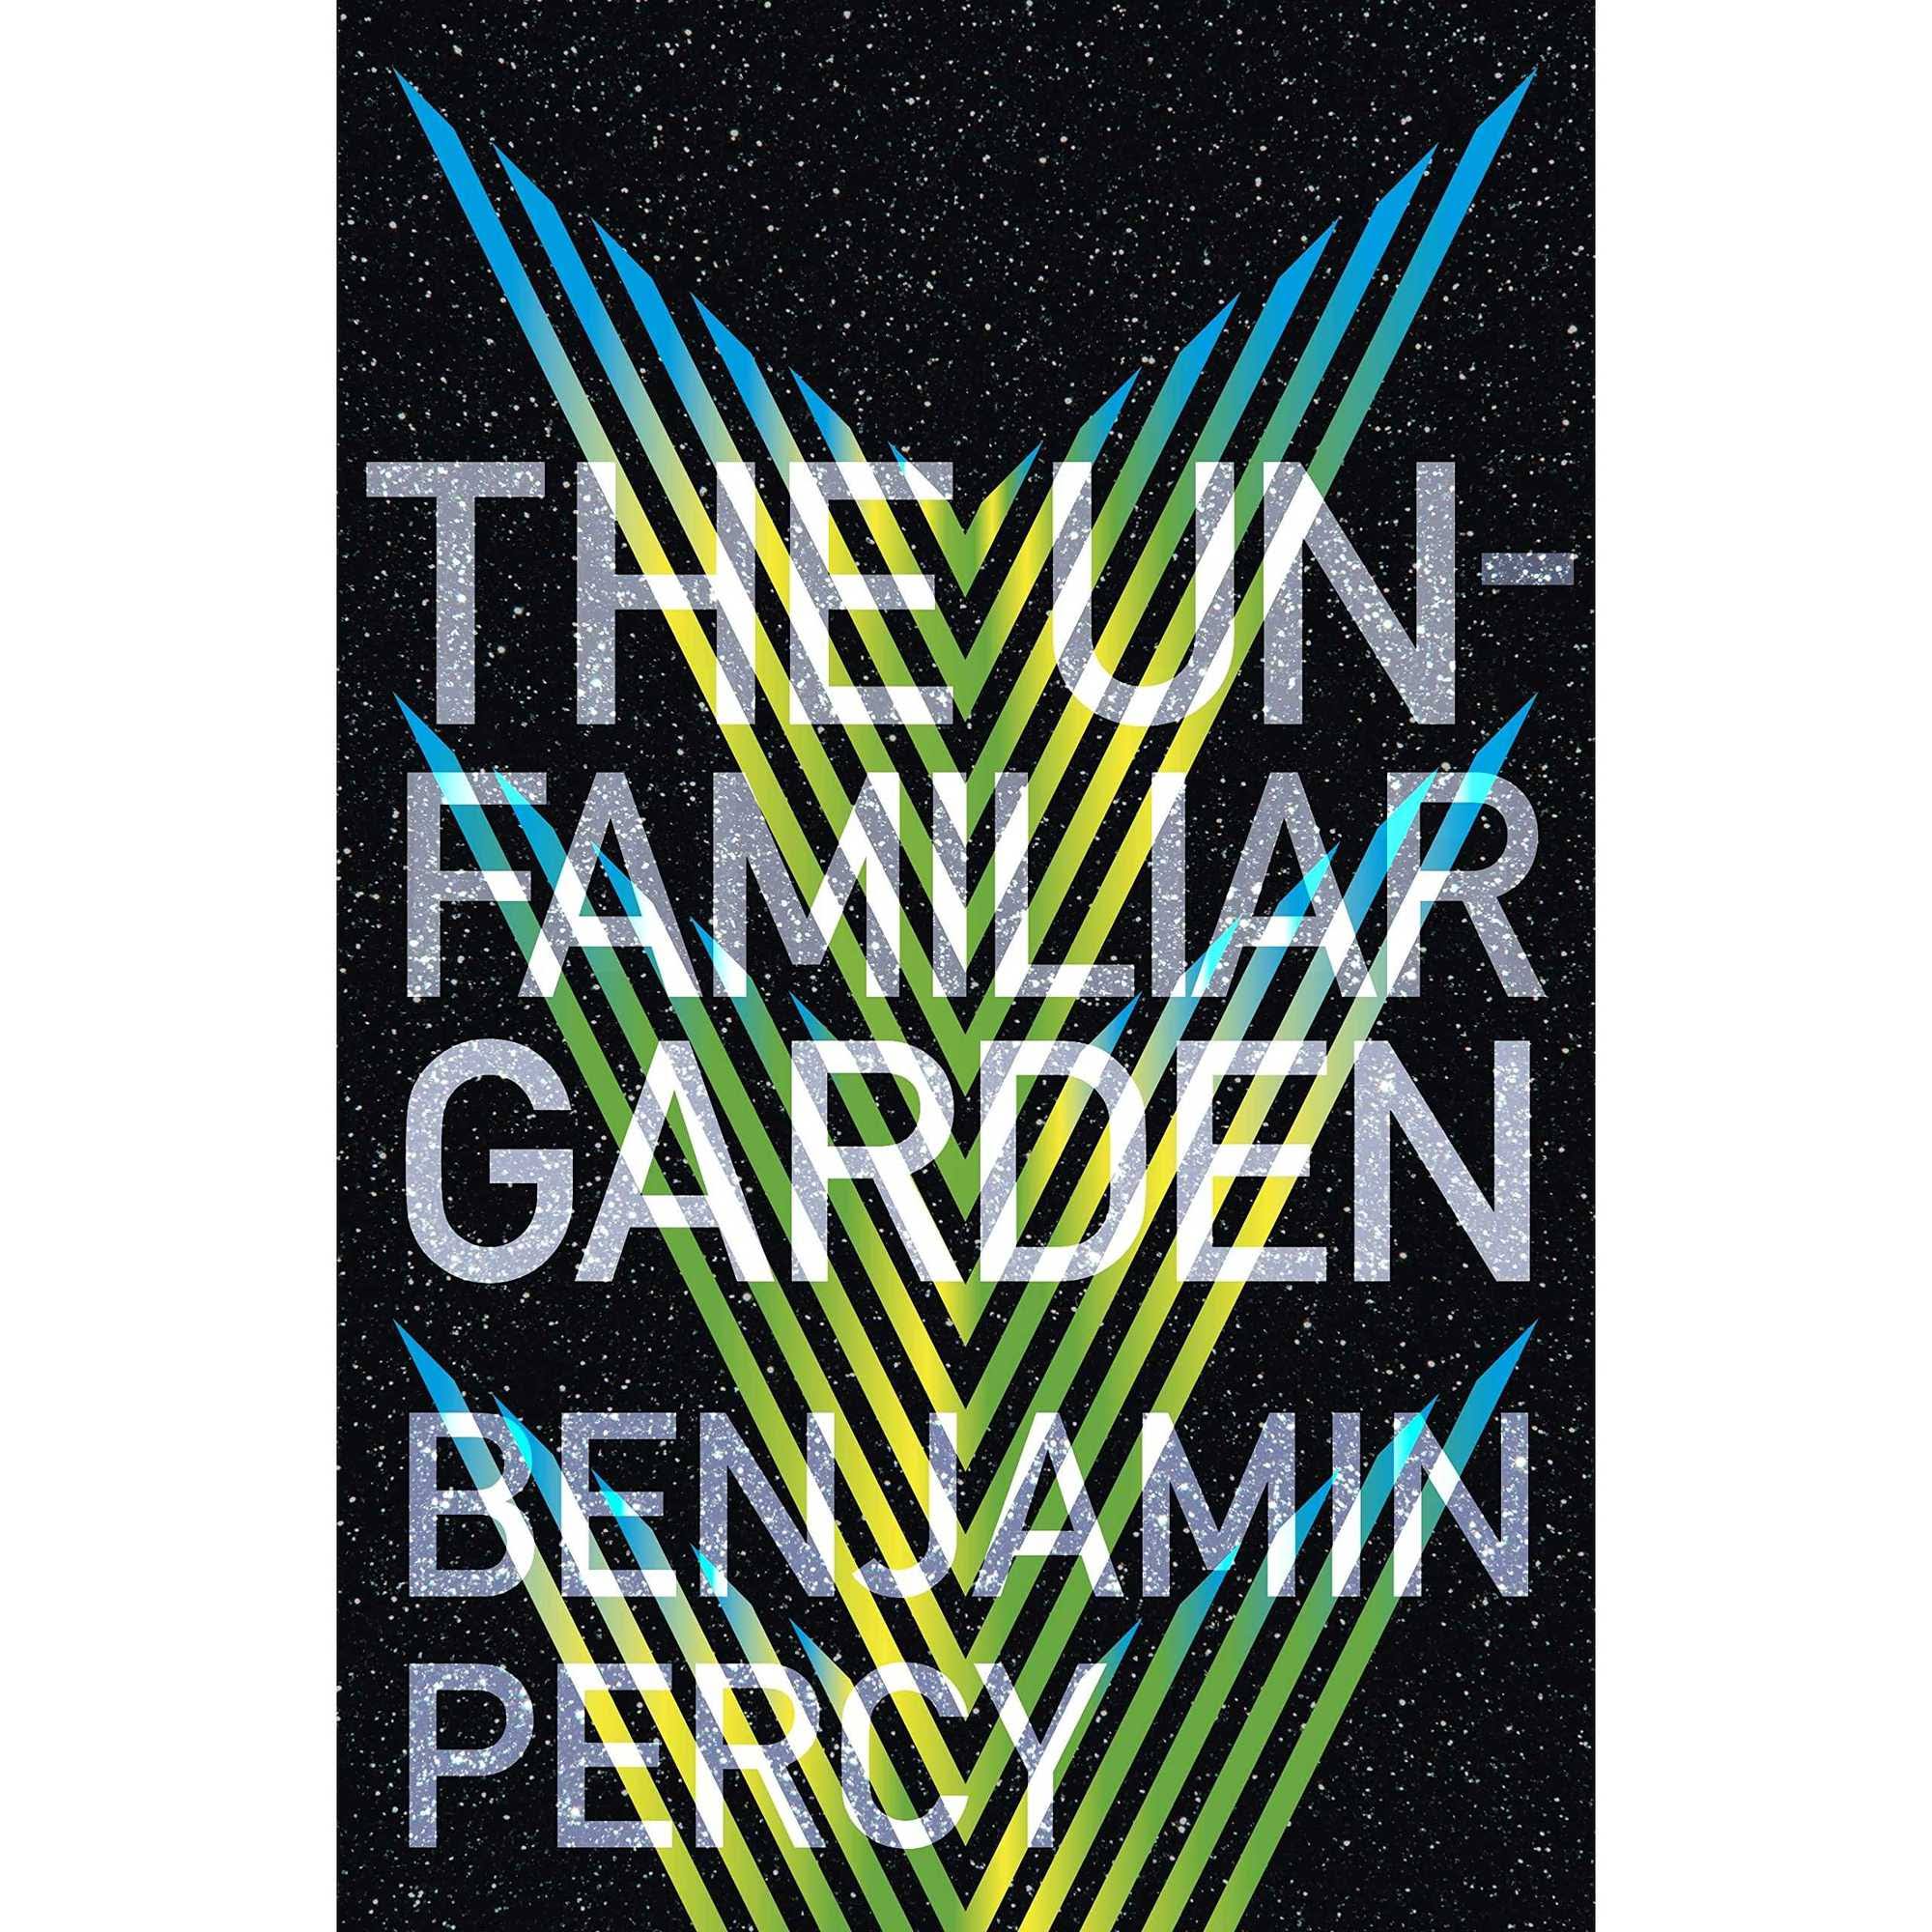 The Unfamiliar Garden by Benjamin Percy